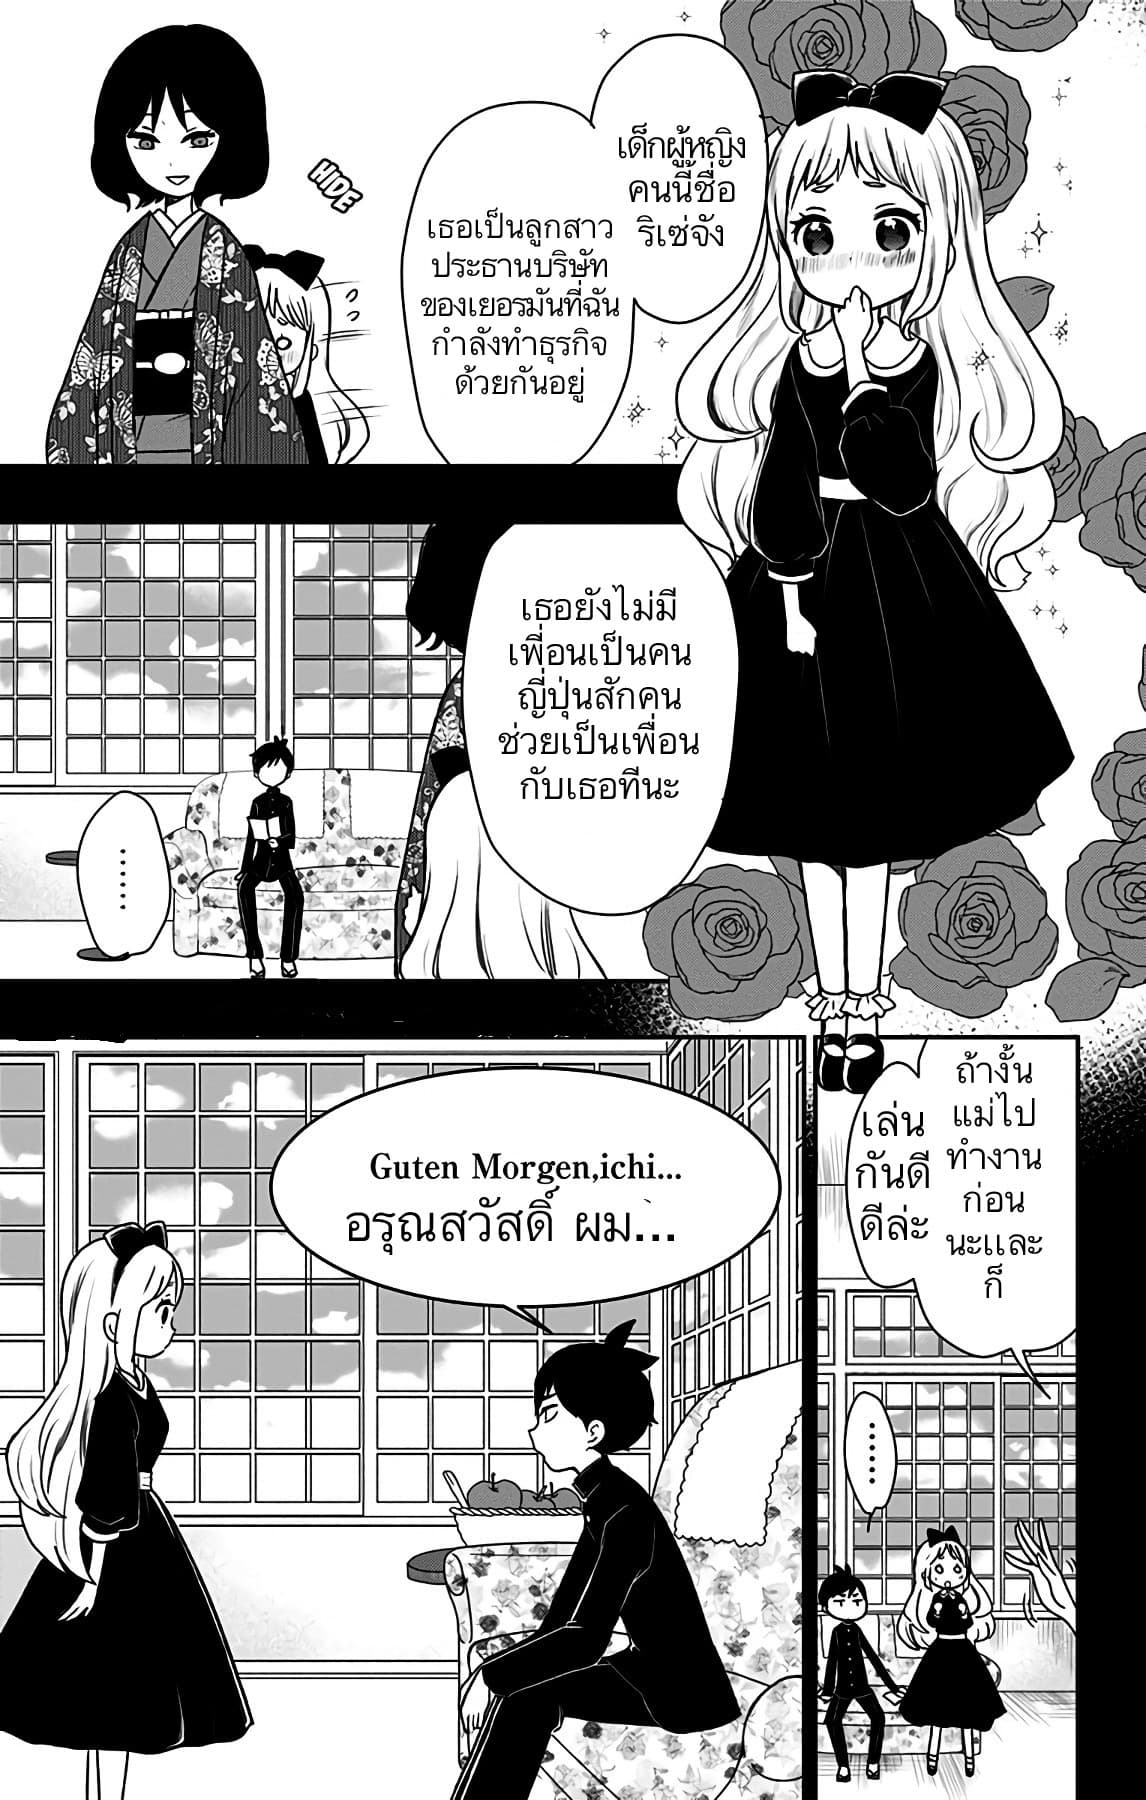 Shouwa Otome Otogibanashi เรื่องเล่าของสาวน้อย ยุคโชวะ ตอนที่ 11 (9)